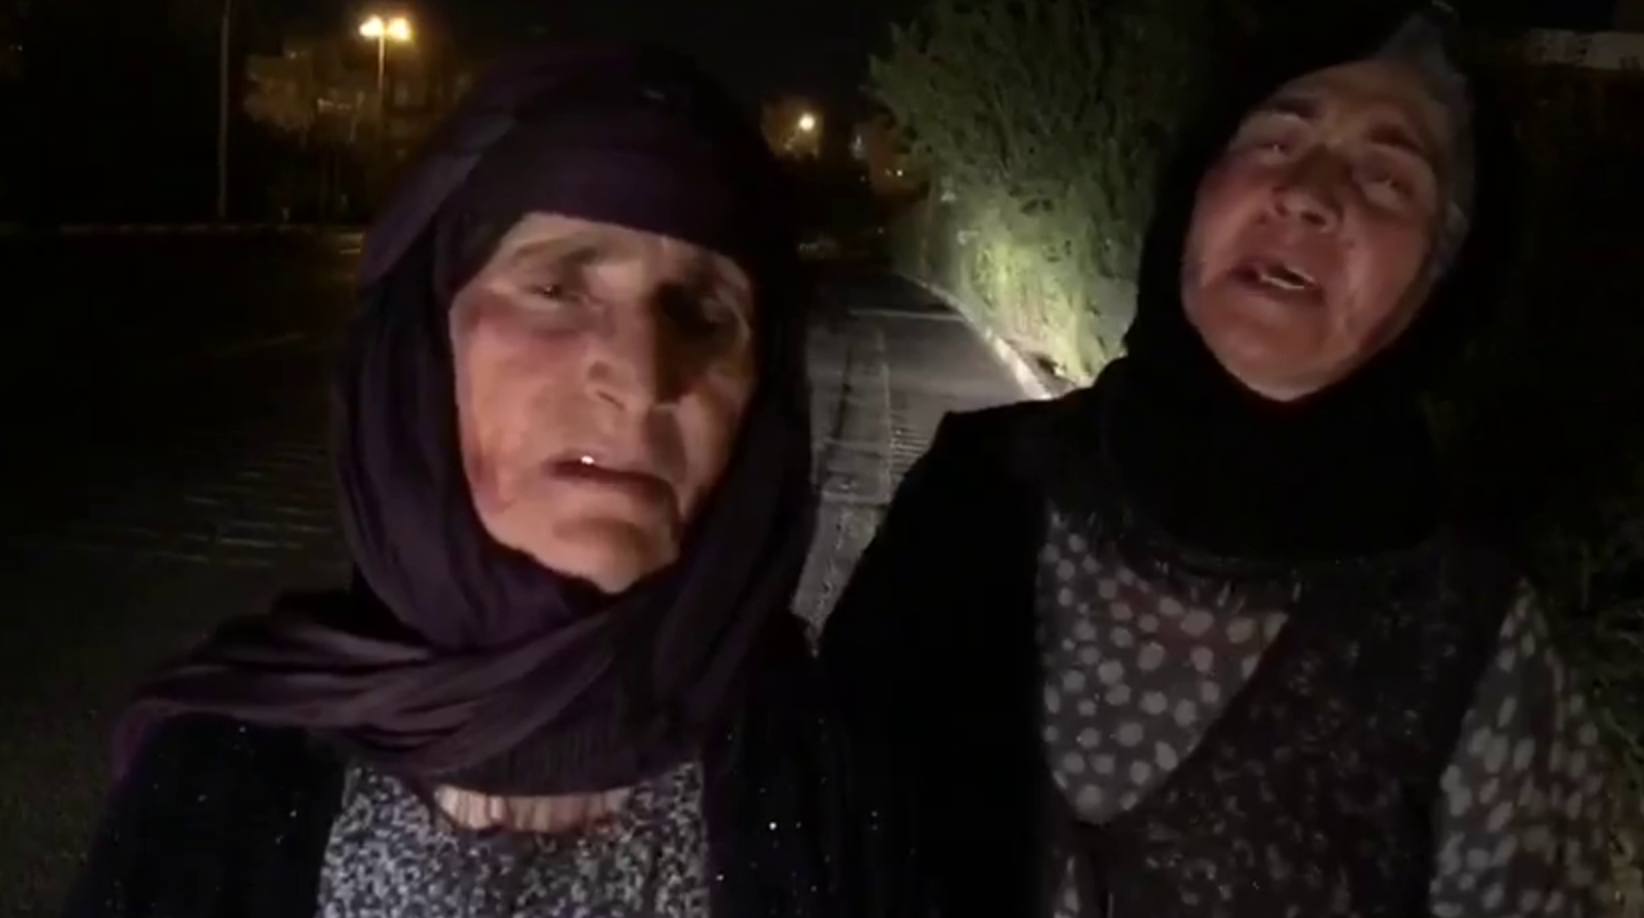 دایه شریفه، مادر رامین حسین پناهی در بهشت زهرا: پسرم بی گناه اعدام شد، در اعتصاب غذا و با لب های دوخته